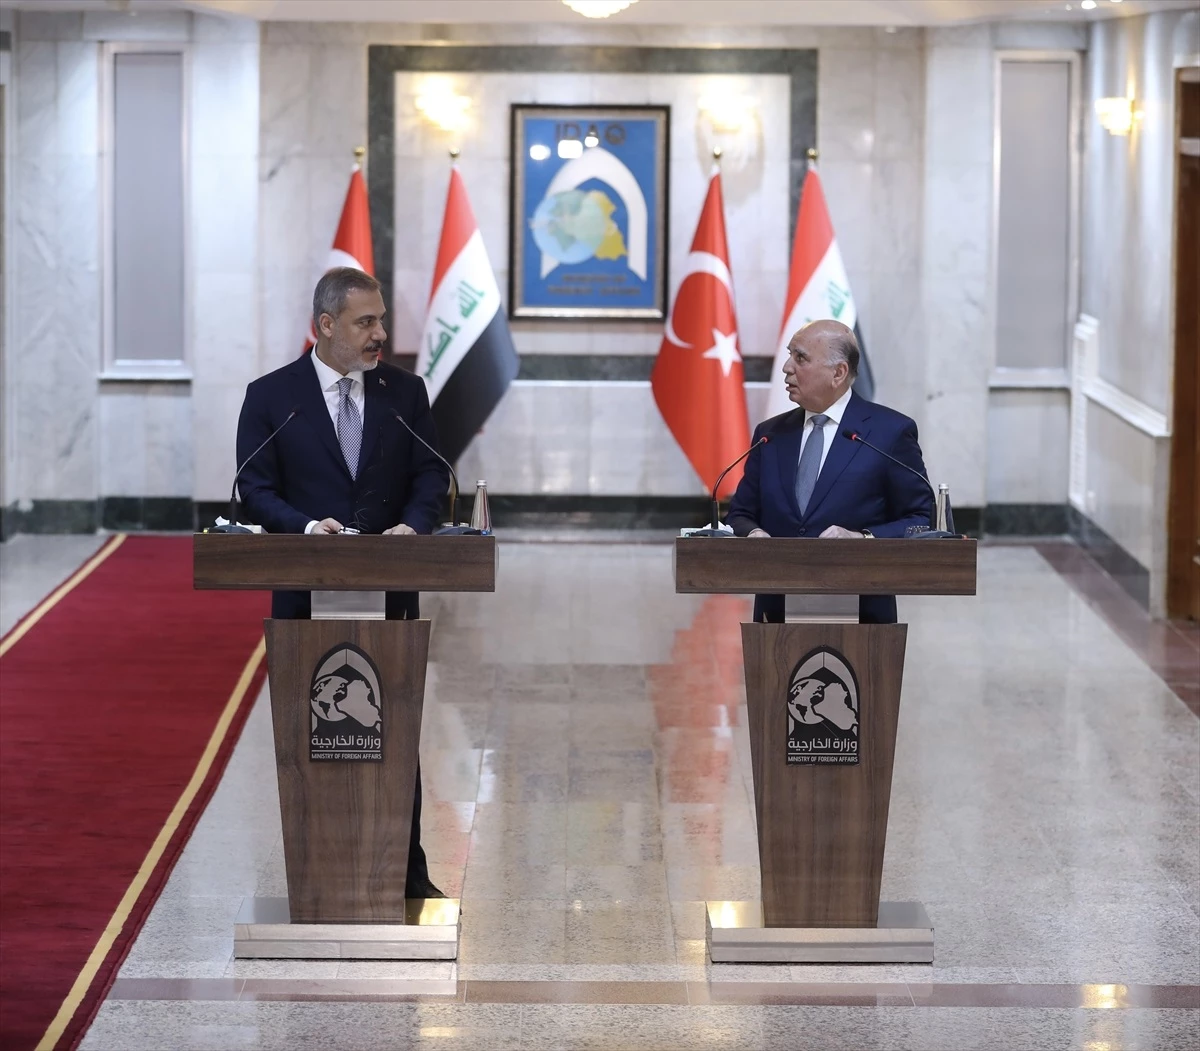 Irak Dışişleri Bakanı Fuad Hüseyin: "Türkiye ile ticari ilişkilerimiz hızlı şekilde ilerledi ve gittikçe gelişmeye devam ediyor"